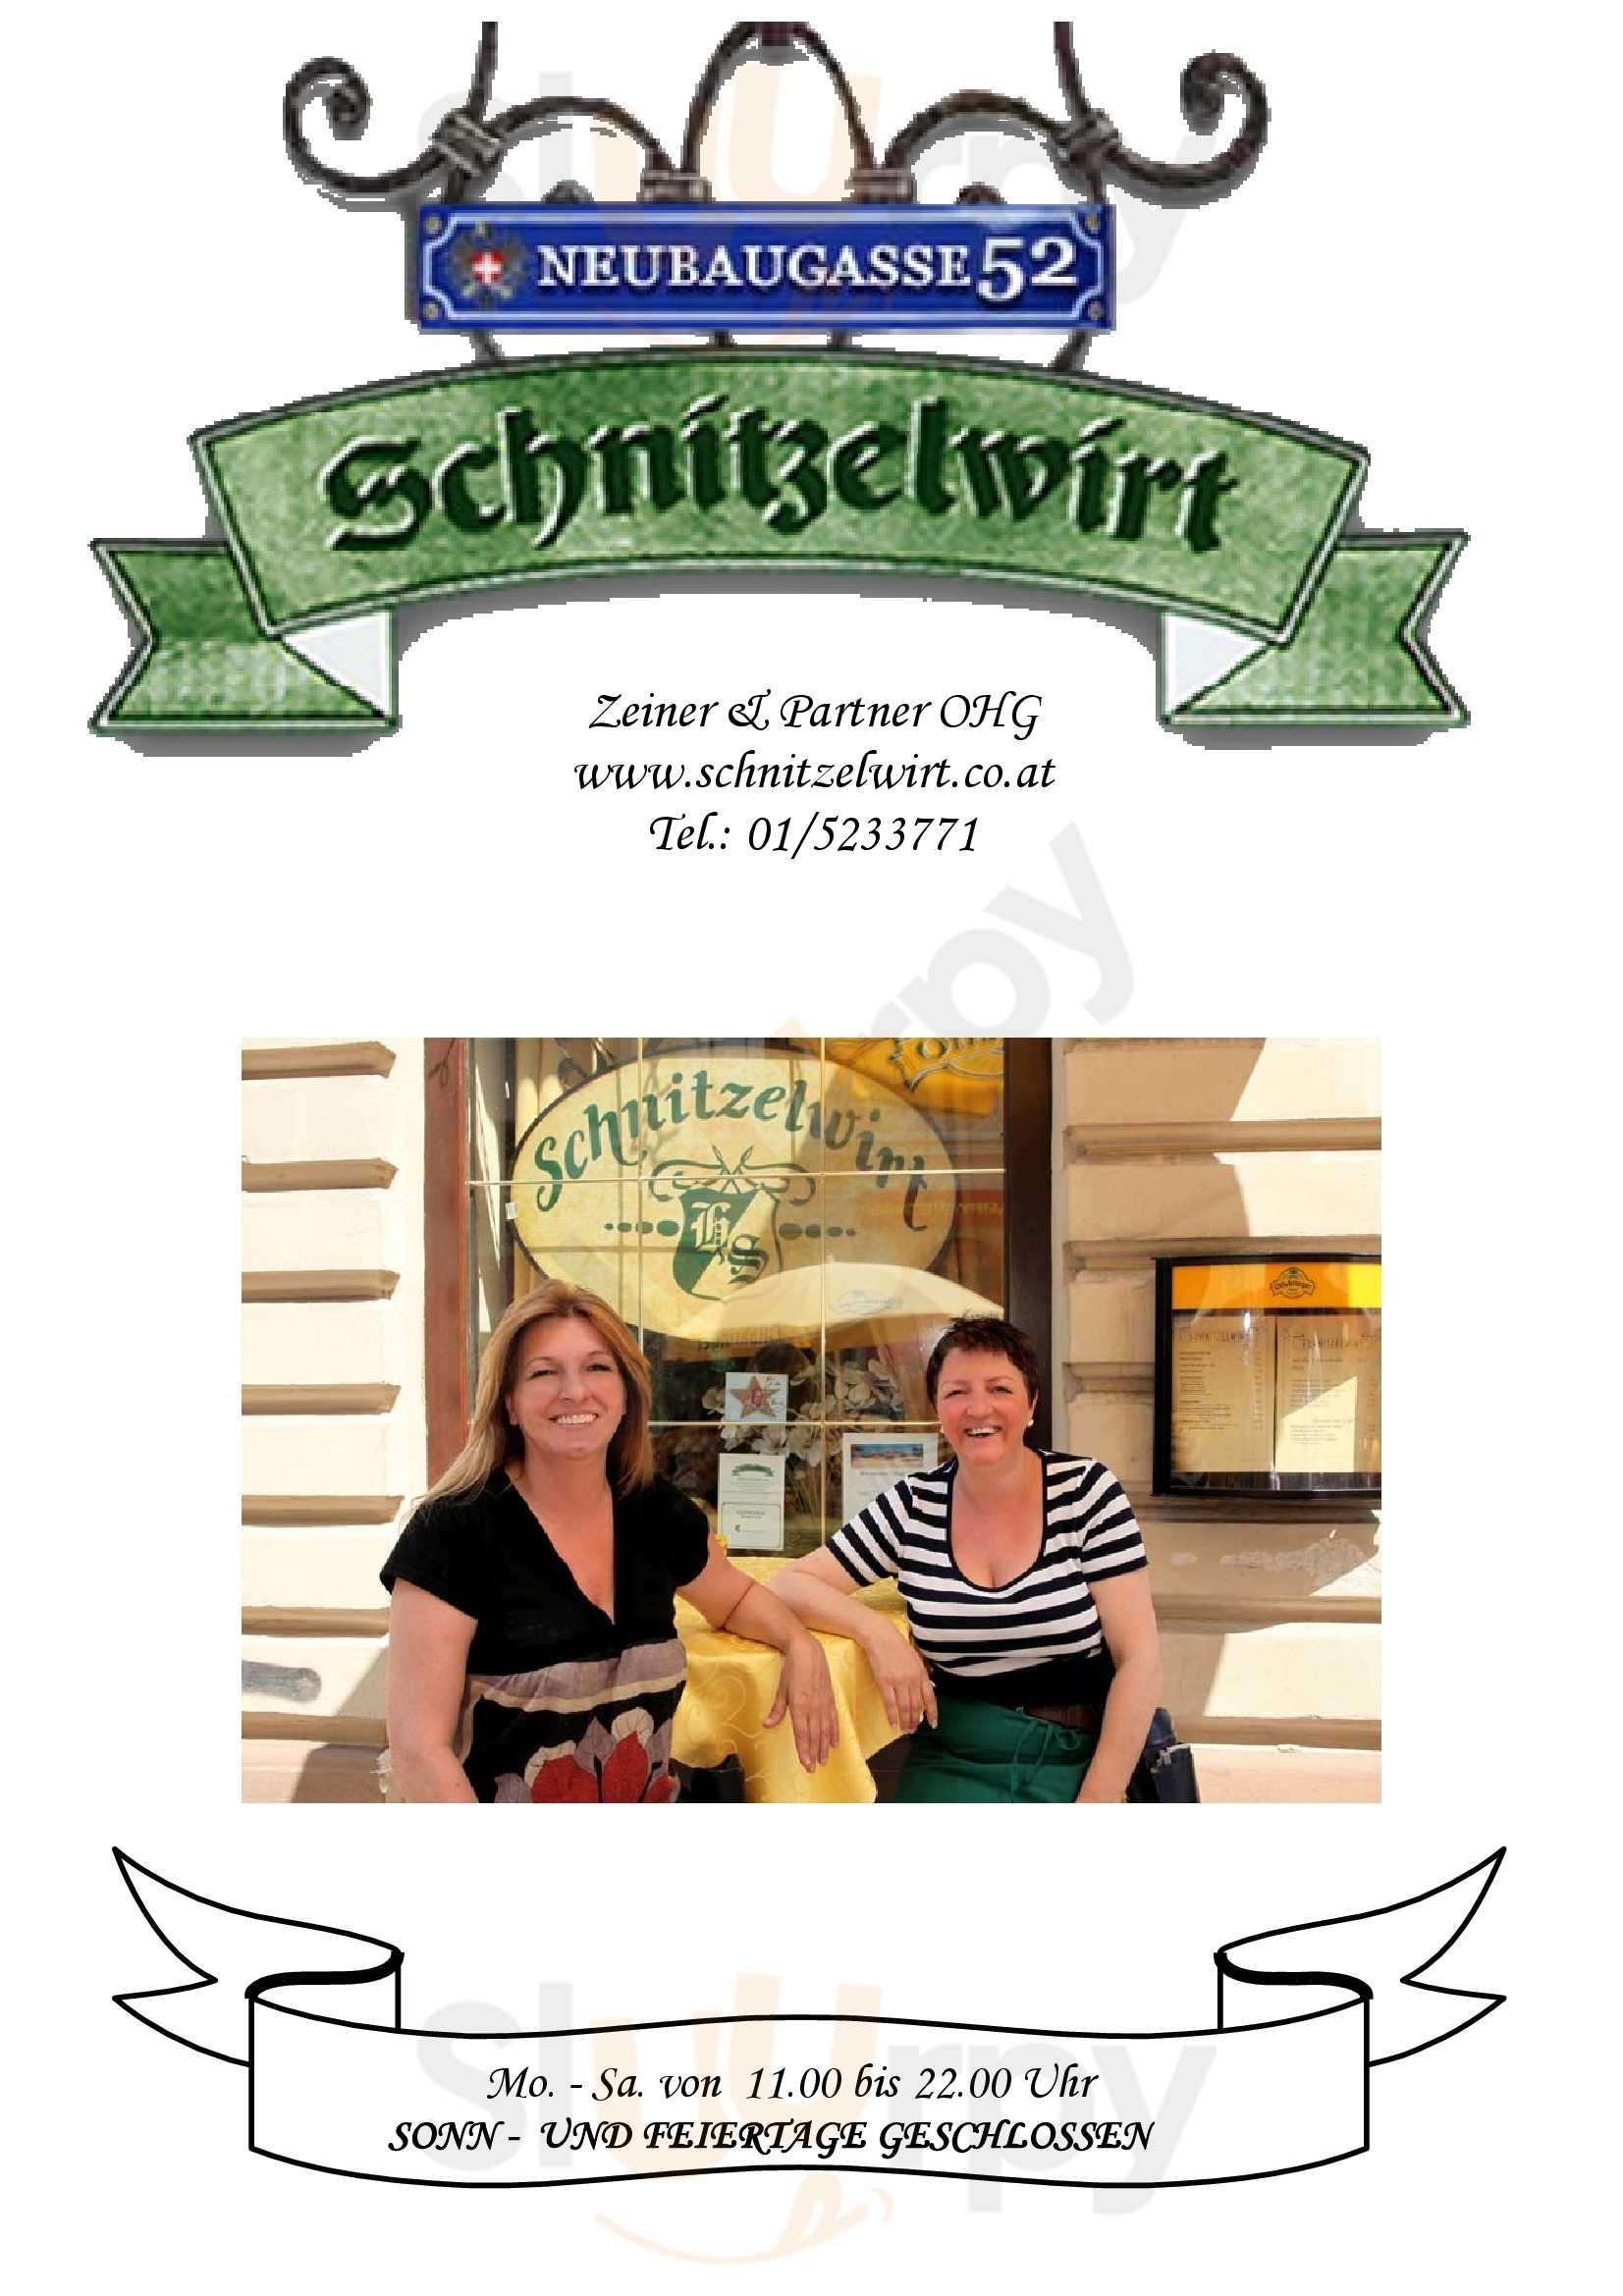 Schnitzelwirt Wien Menu - 1